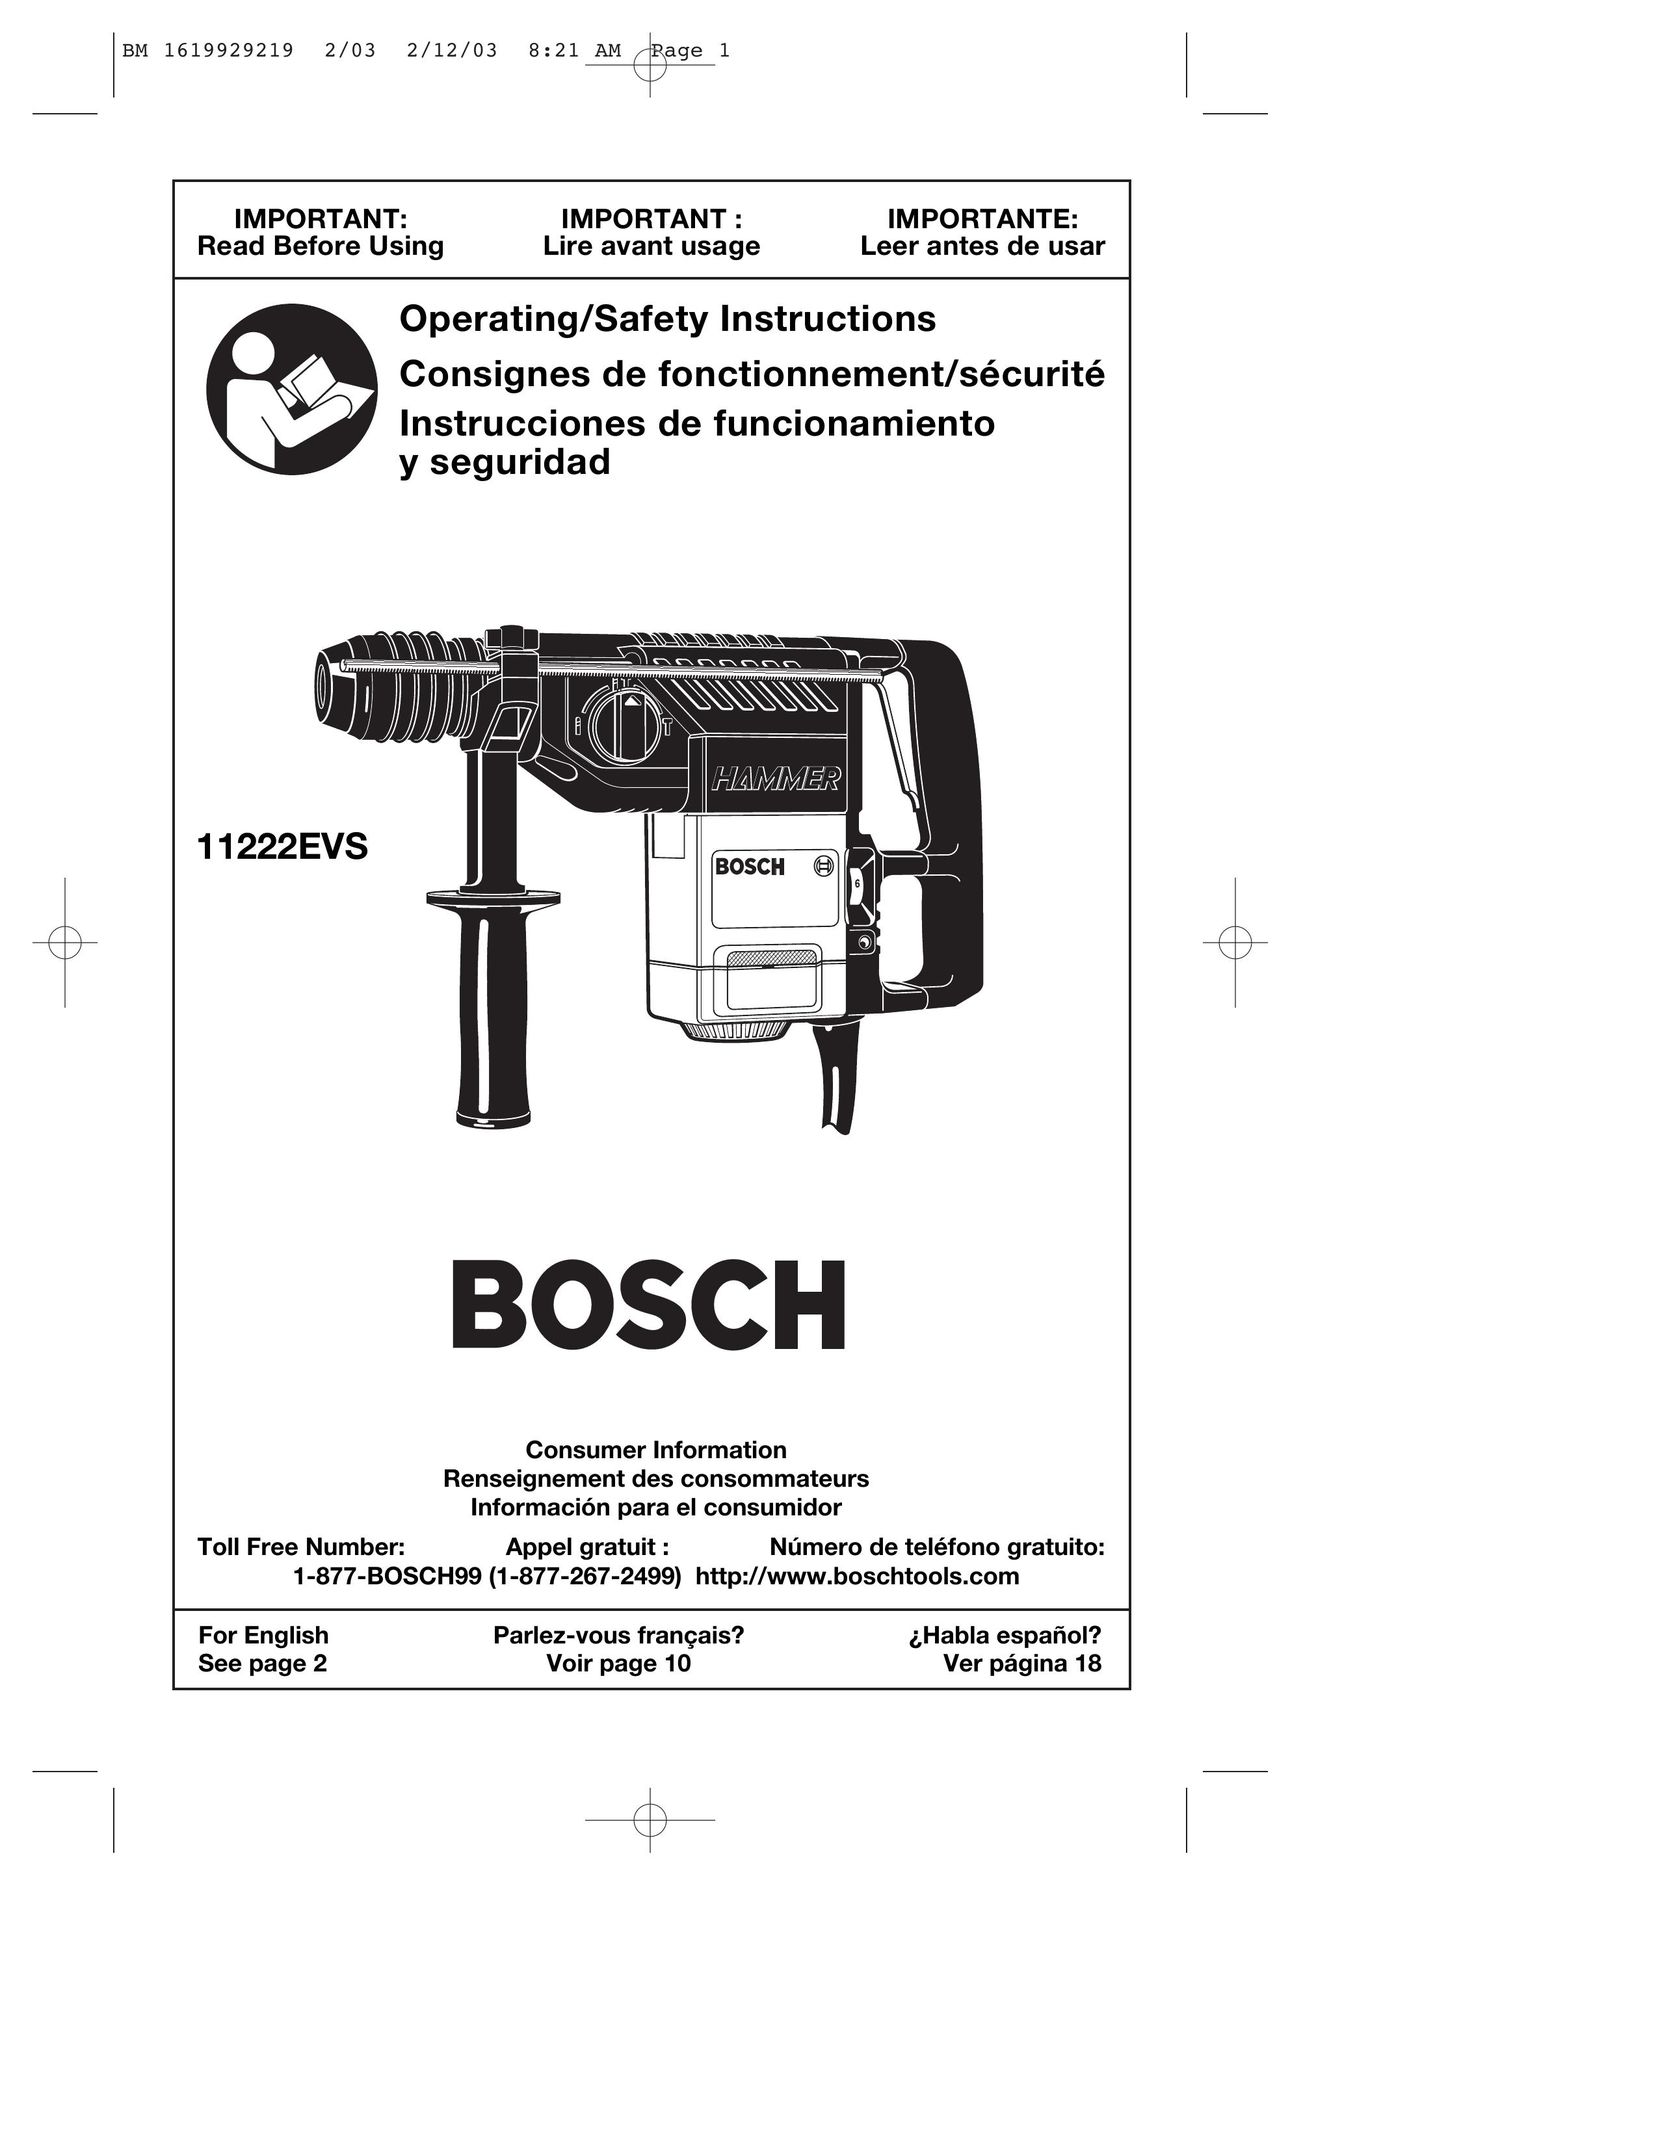 Bosch Power Tools 11222EVS Power Hammer User Manual